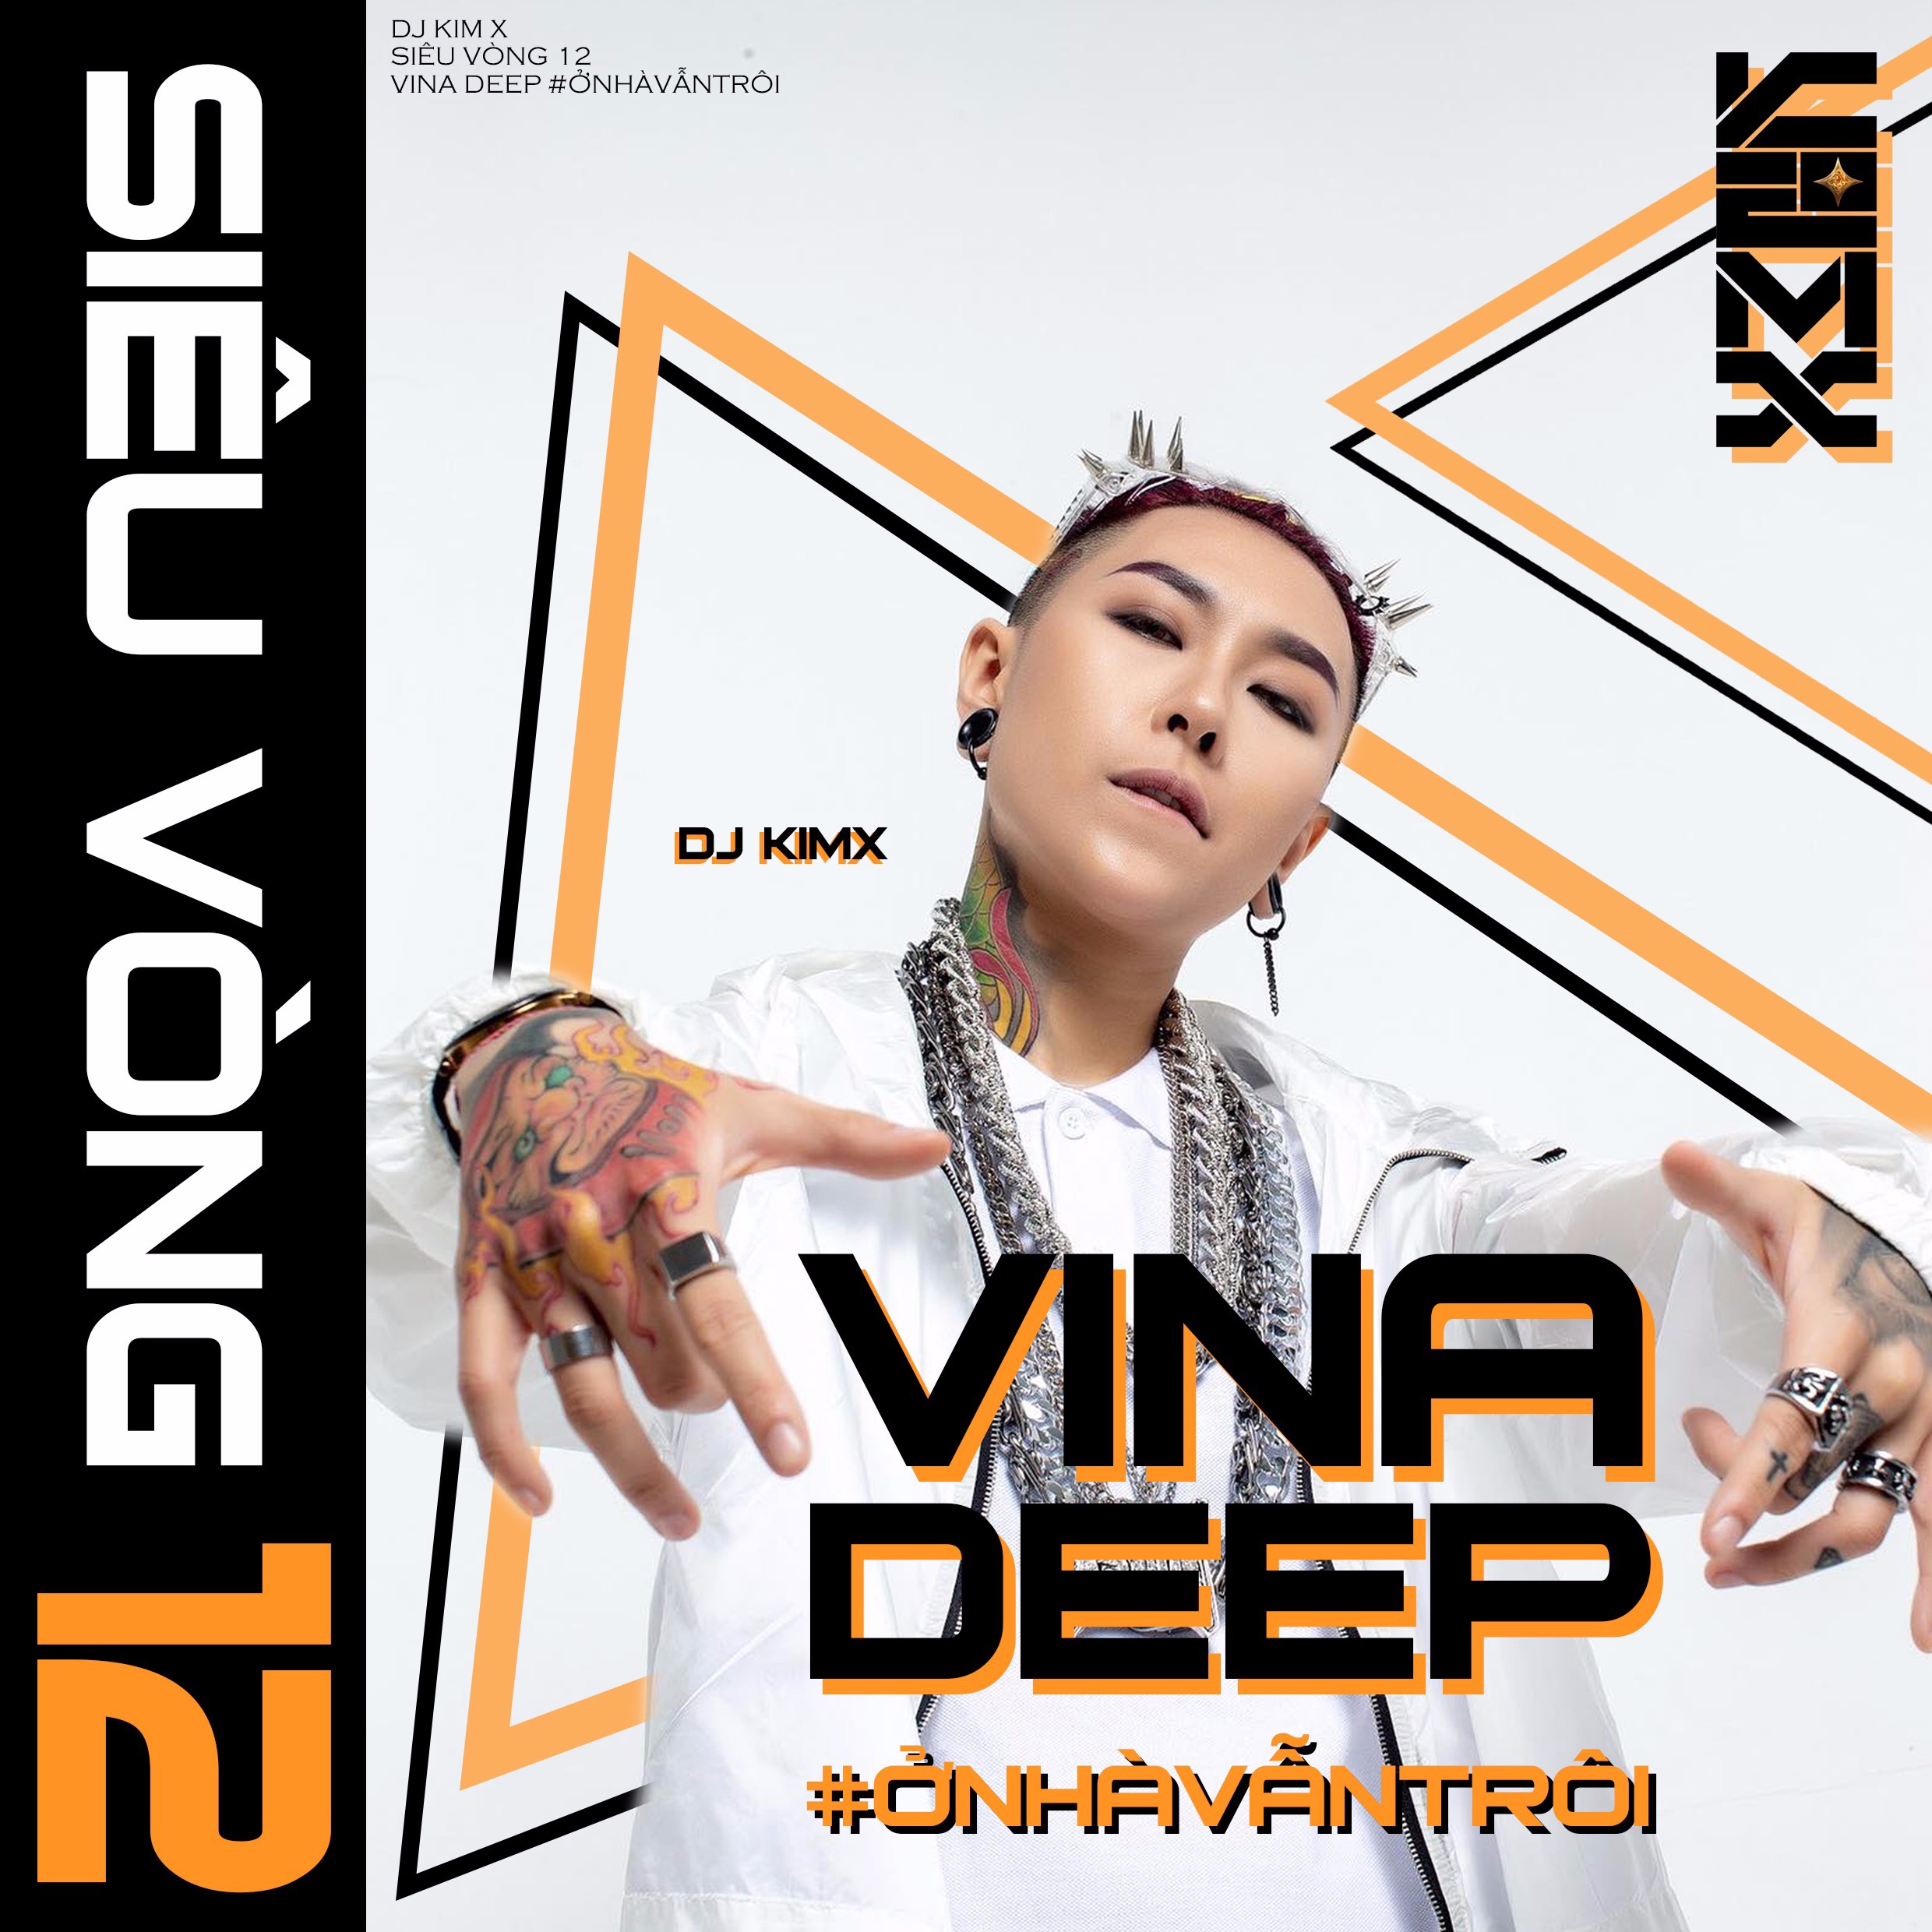 Download #ỞNHÀVẪNTRÔI --- DJ KIMX --- MIXSET KIMX SIÊU VÒNG 12 --- VINADEEP